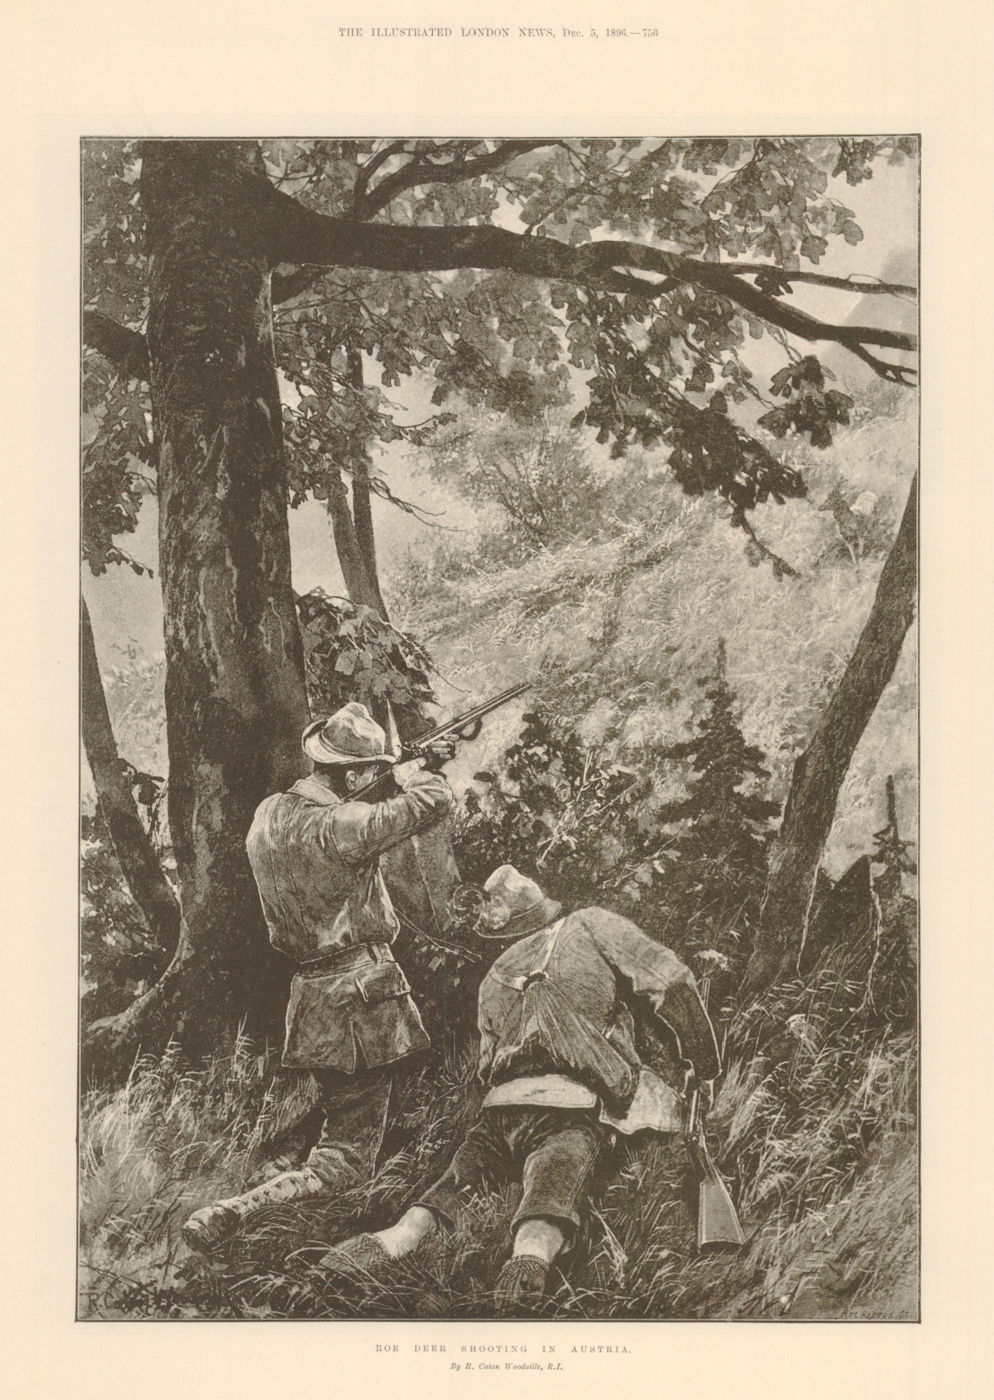 Roe Deer Shooting in Austria shotgun 1896 old antique vintage print picture